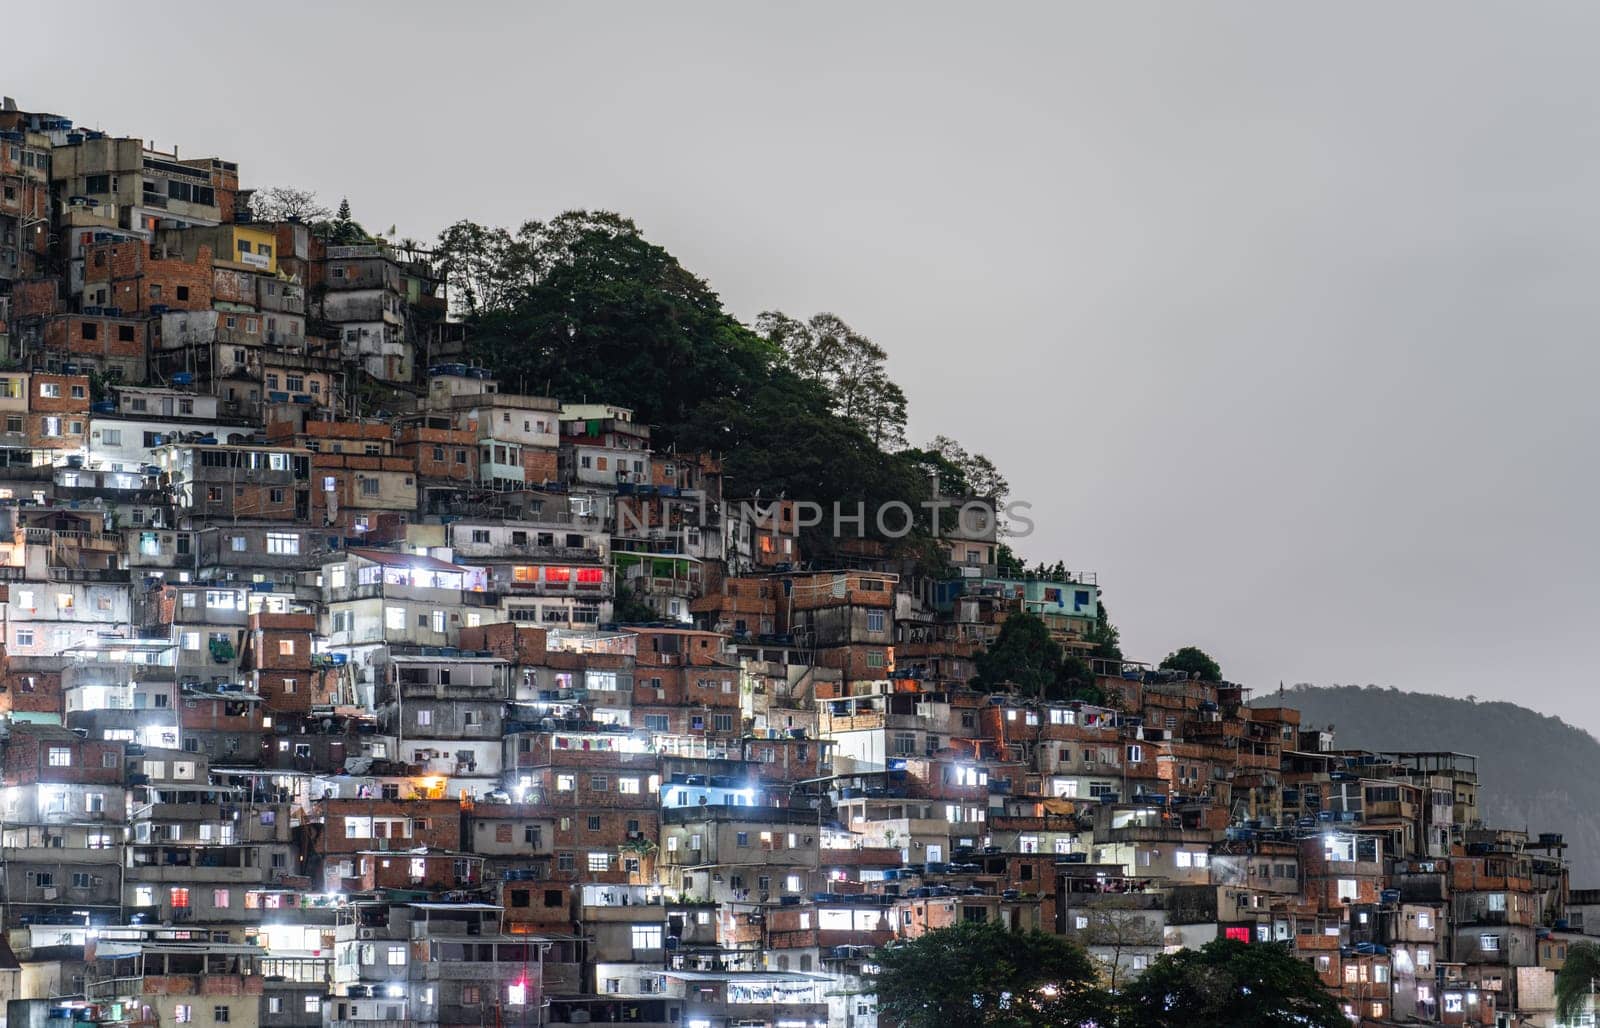 Illuminated Hillside Favela at Night in Urban Brazil by FerradalFCG